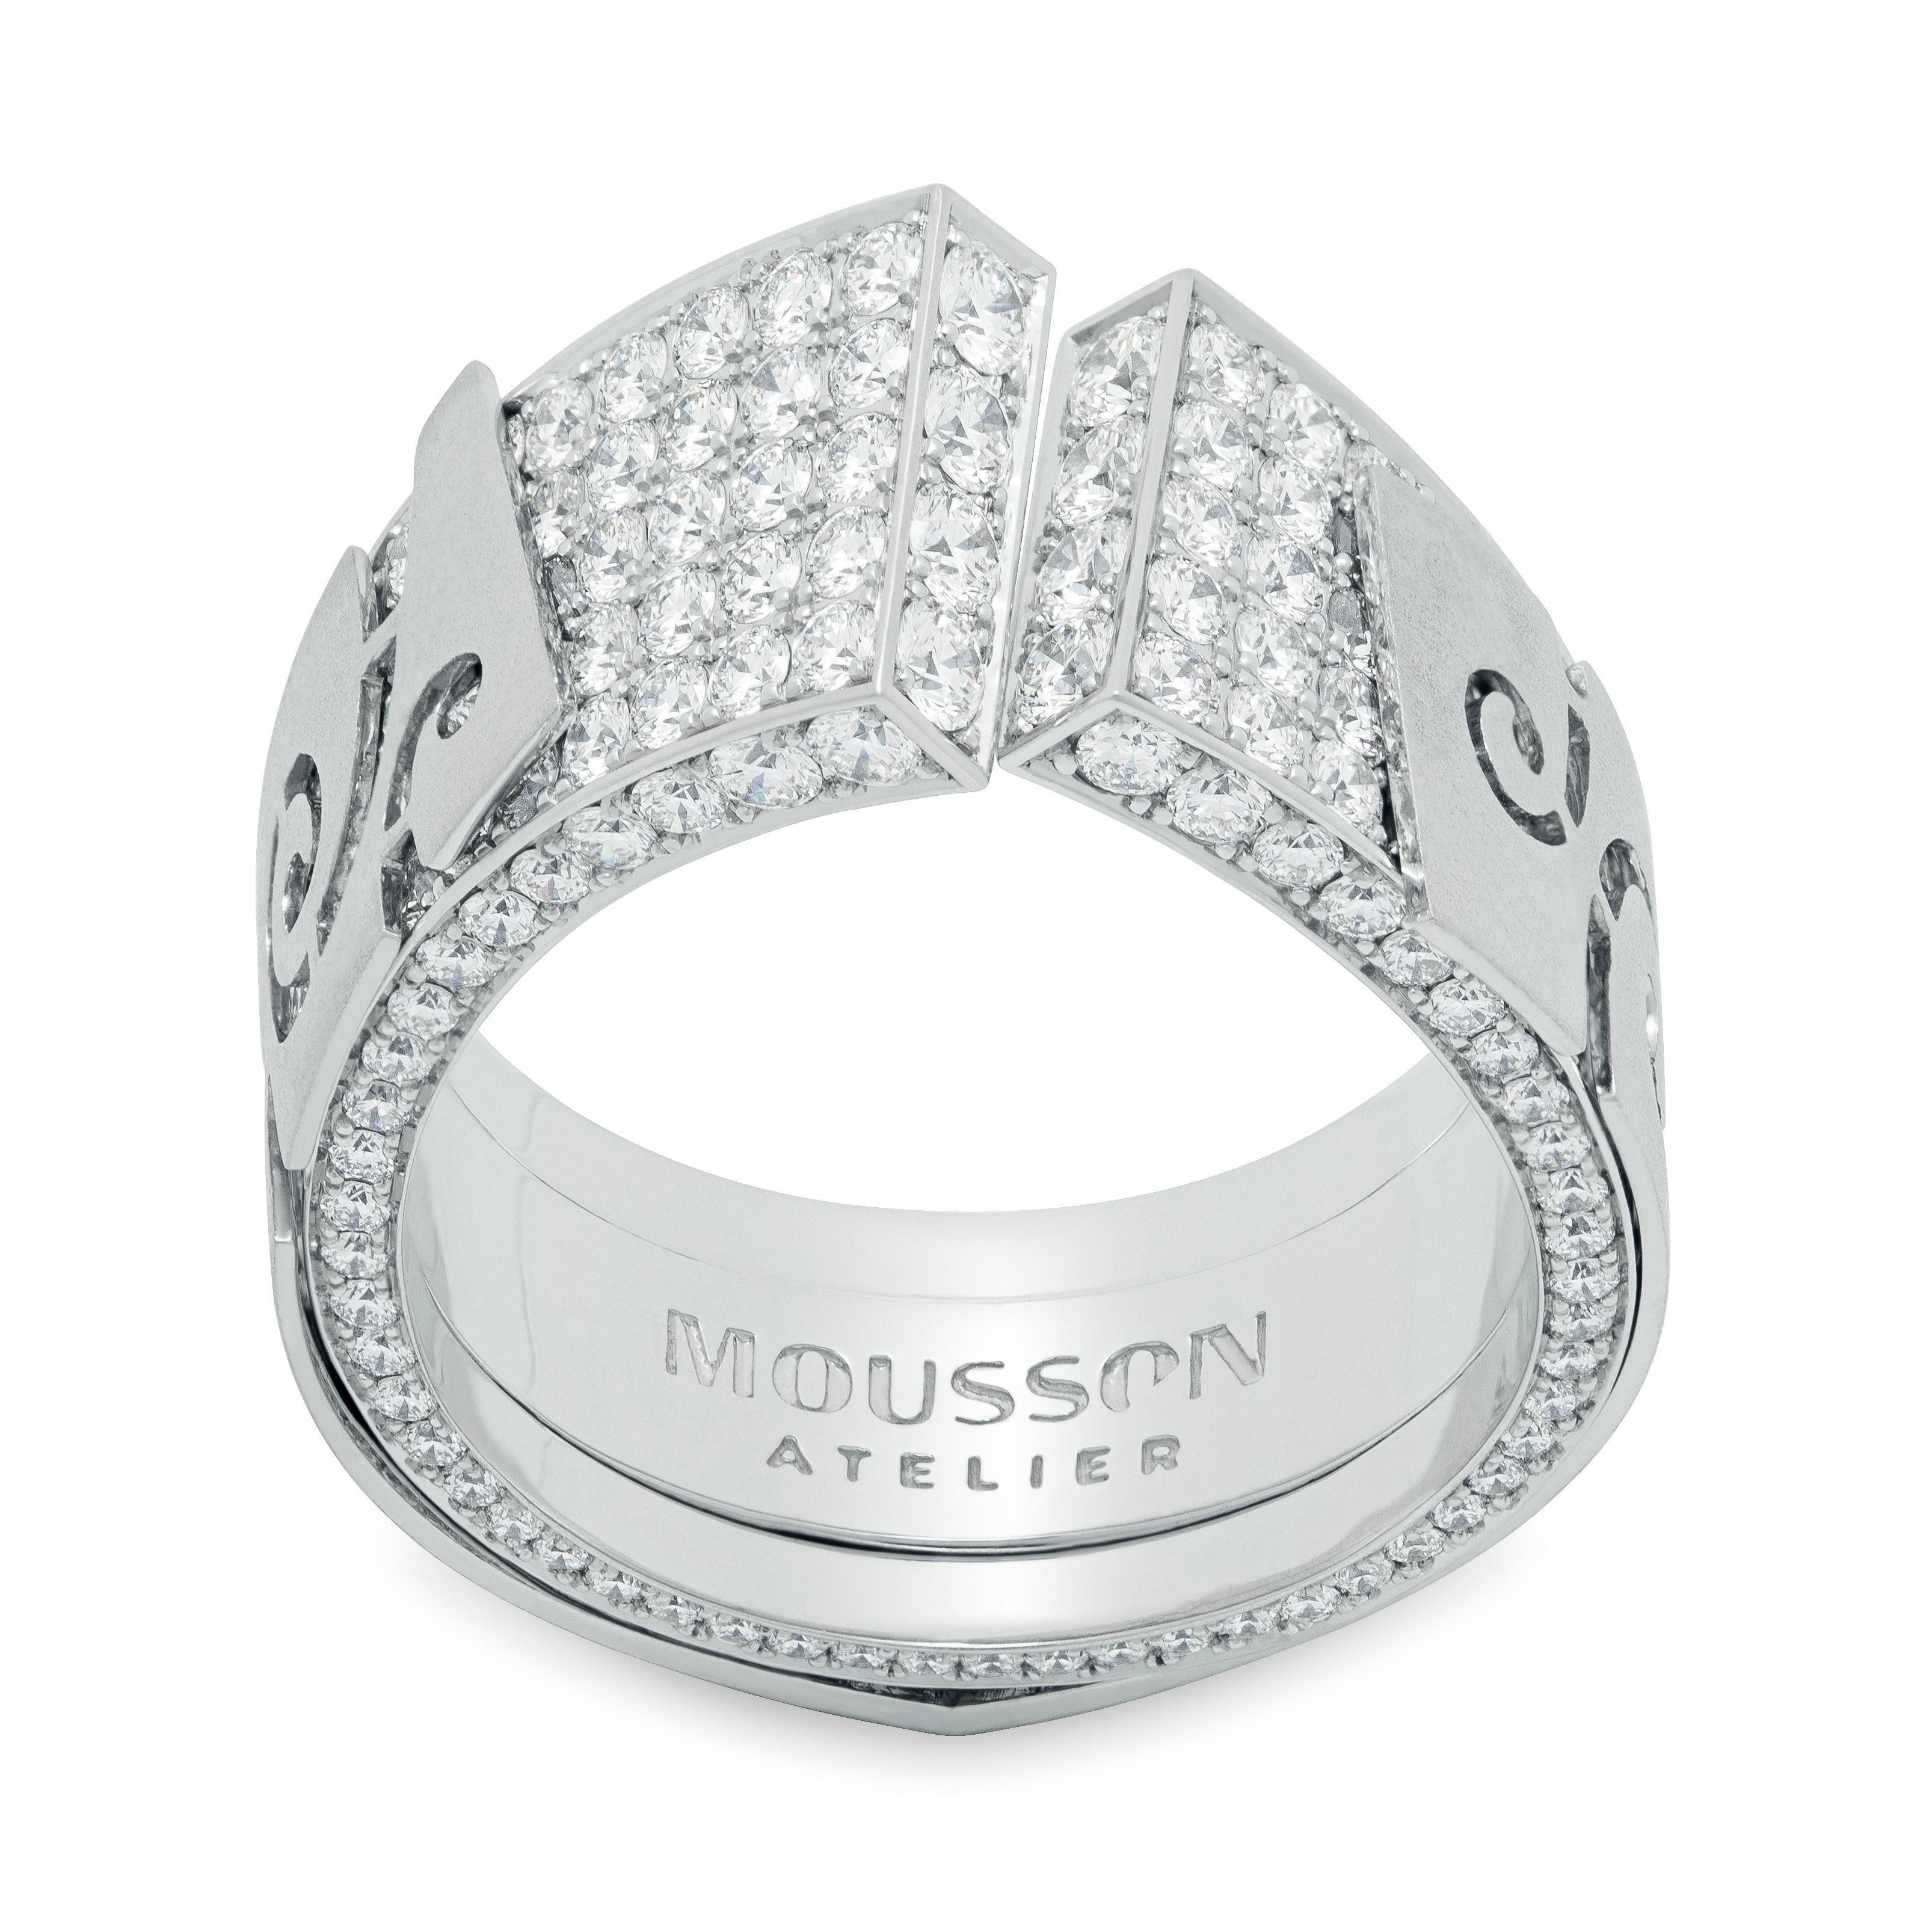 Diamants or blanc 18 carats Veil Suite
Veil a inspiré cette série de bijoux à nos designers. Par exemple, cette suite semble avoir deux couches. La première couche est un 